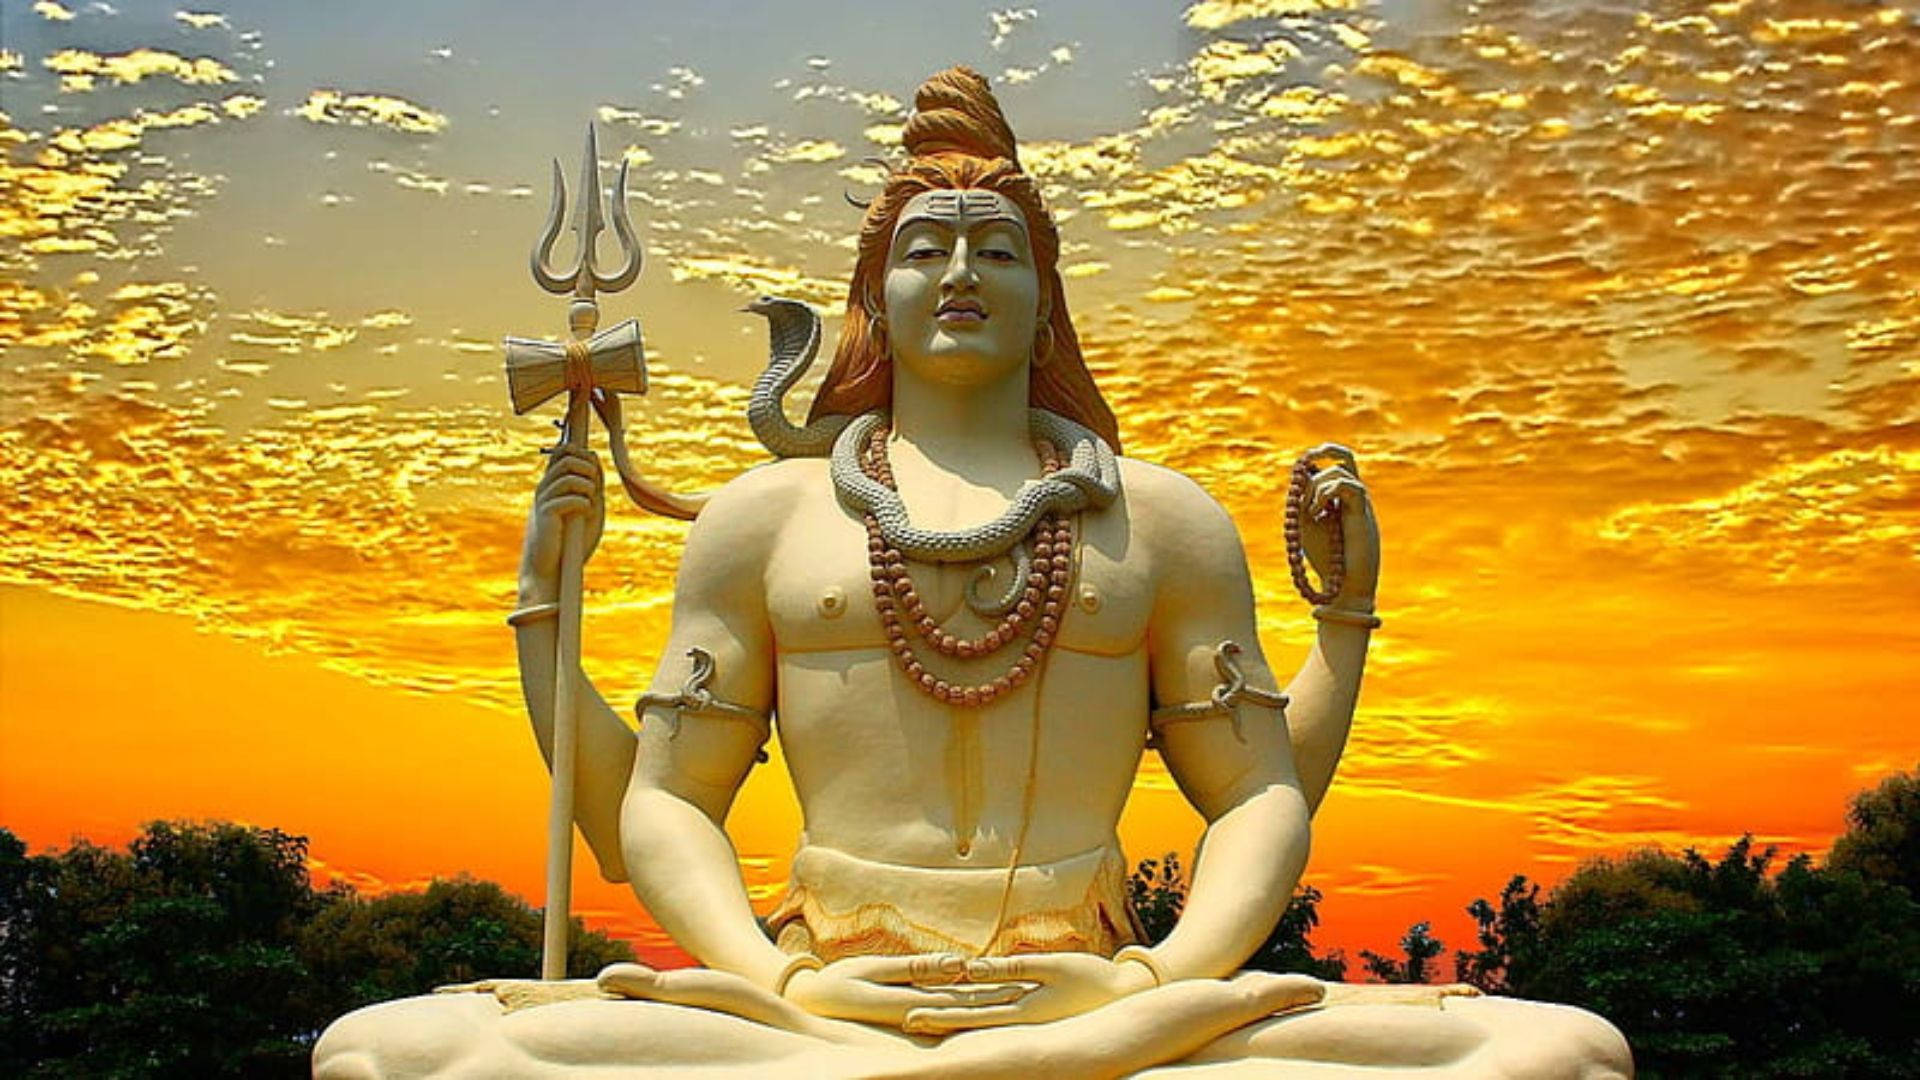 Lord Shiva Hd Sunset Statue